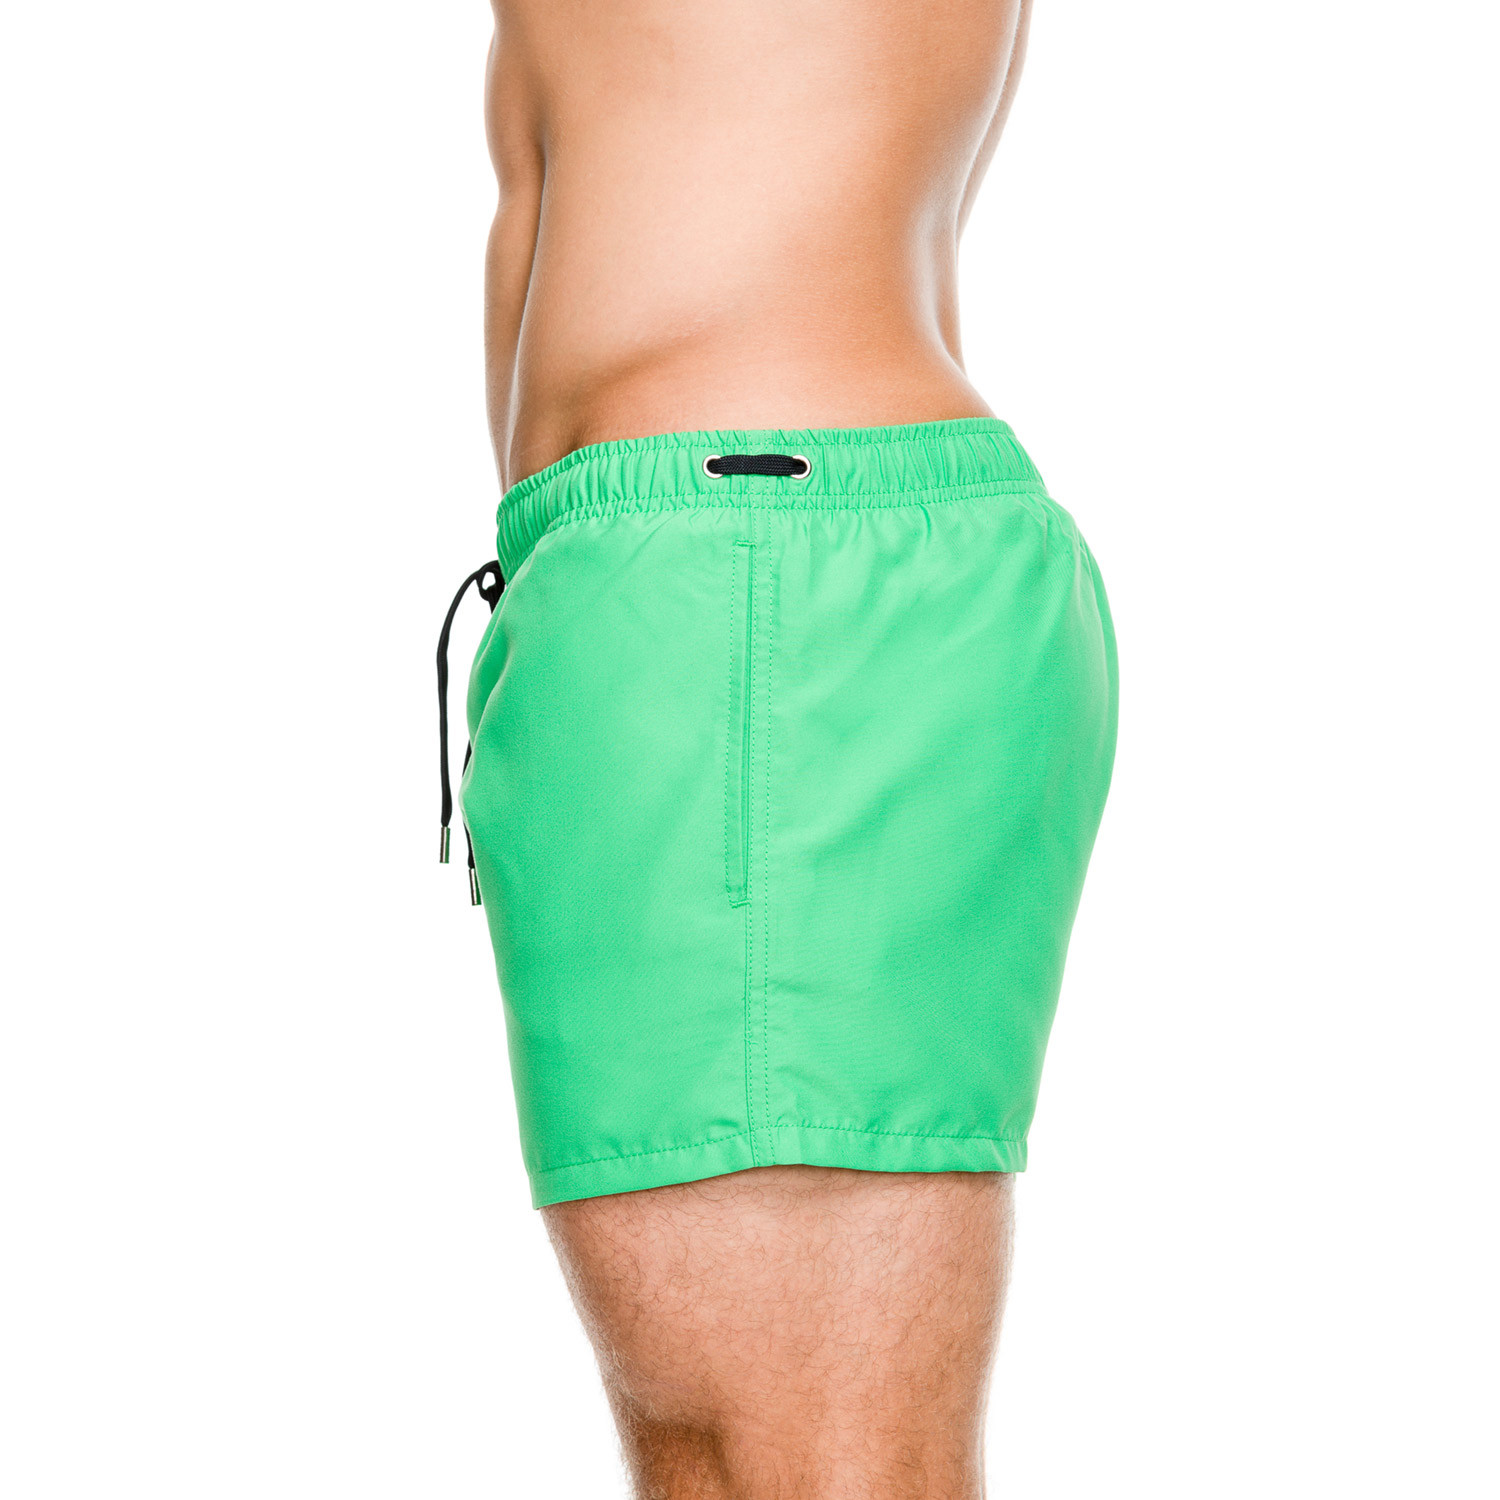 Купить шорты екатеринбург. Зелёные шорты мужские. Салатовые шорты мужские. Шорты пляжные мужские зеленые. Купальные шорты мужские зеленые.